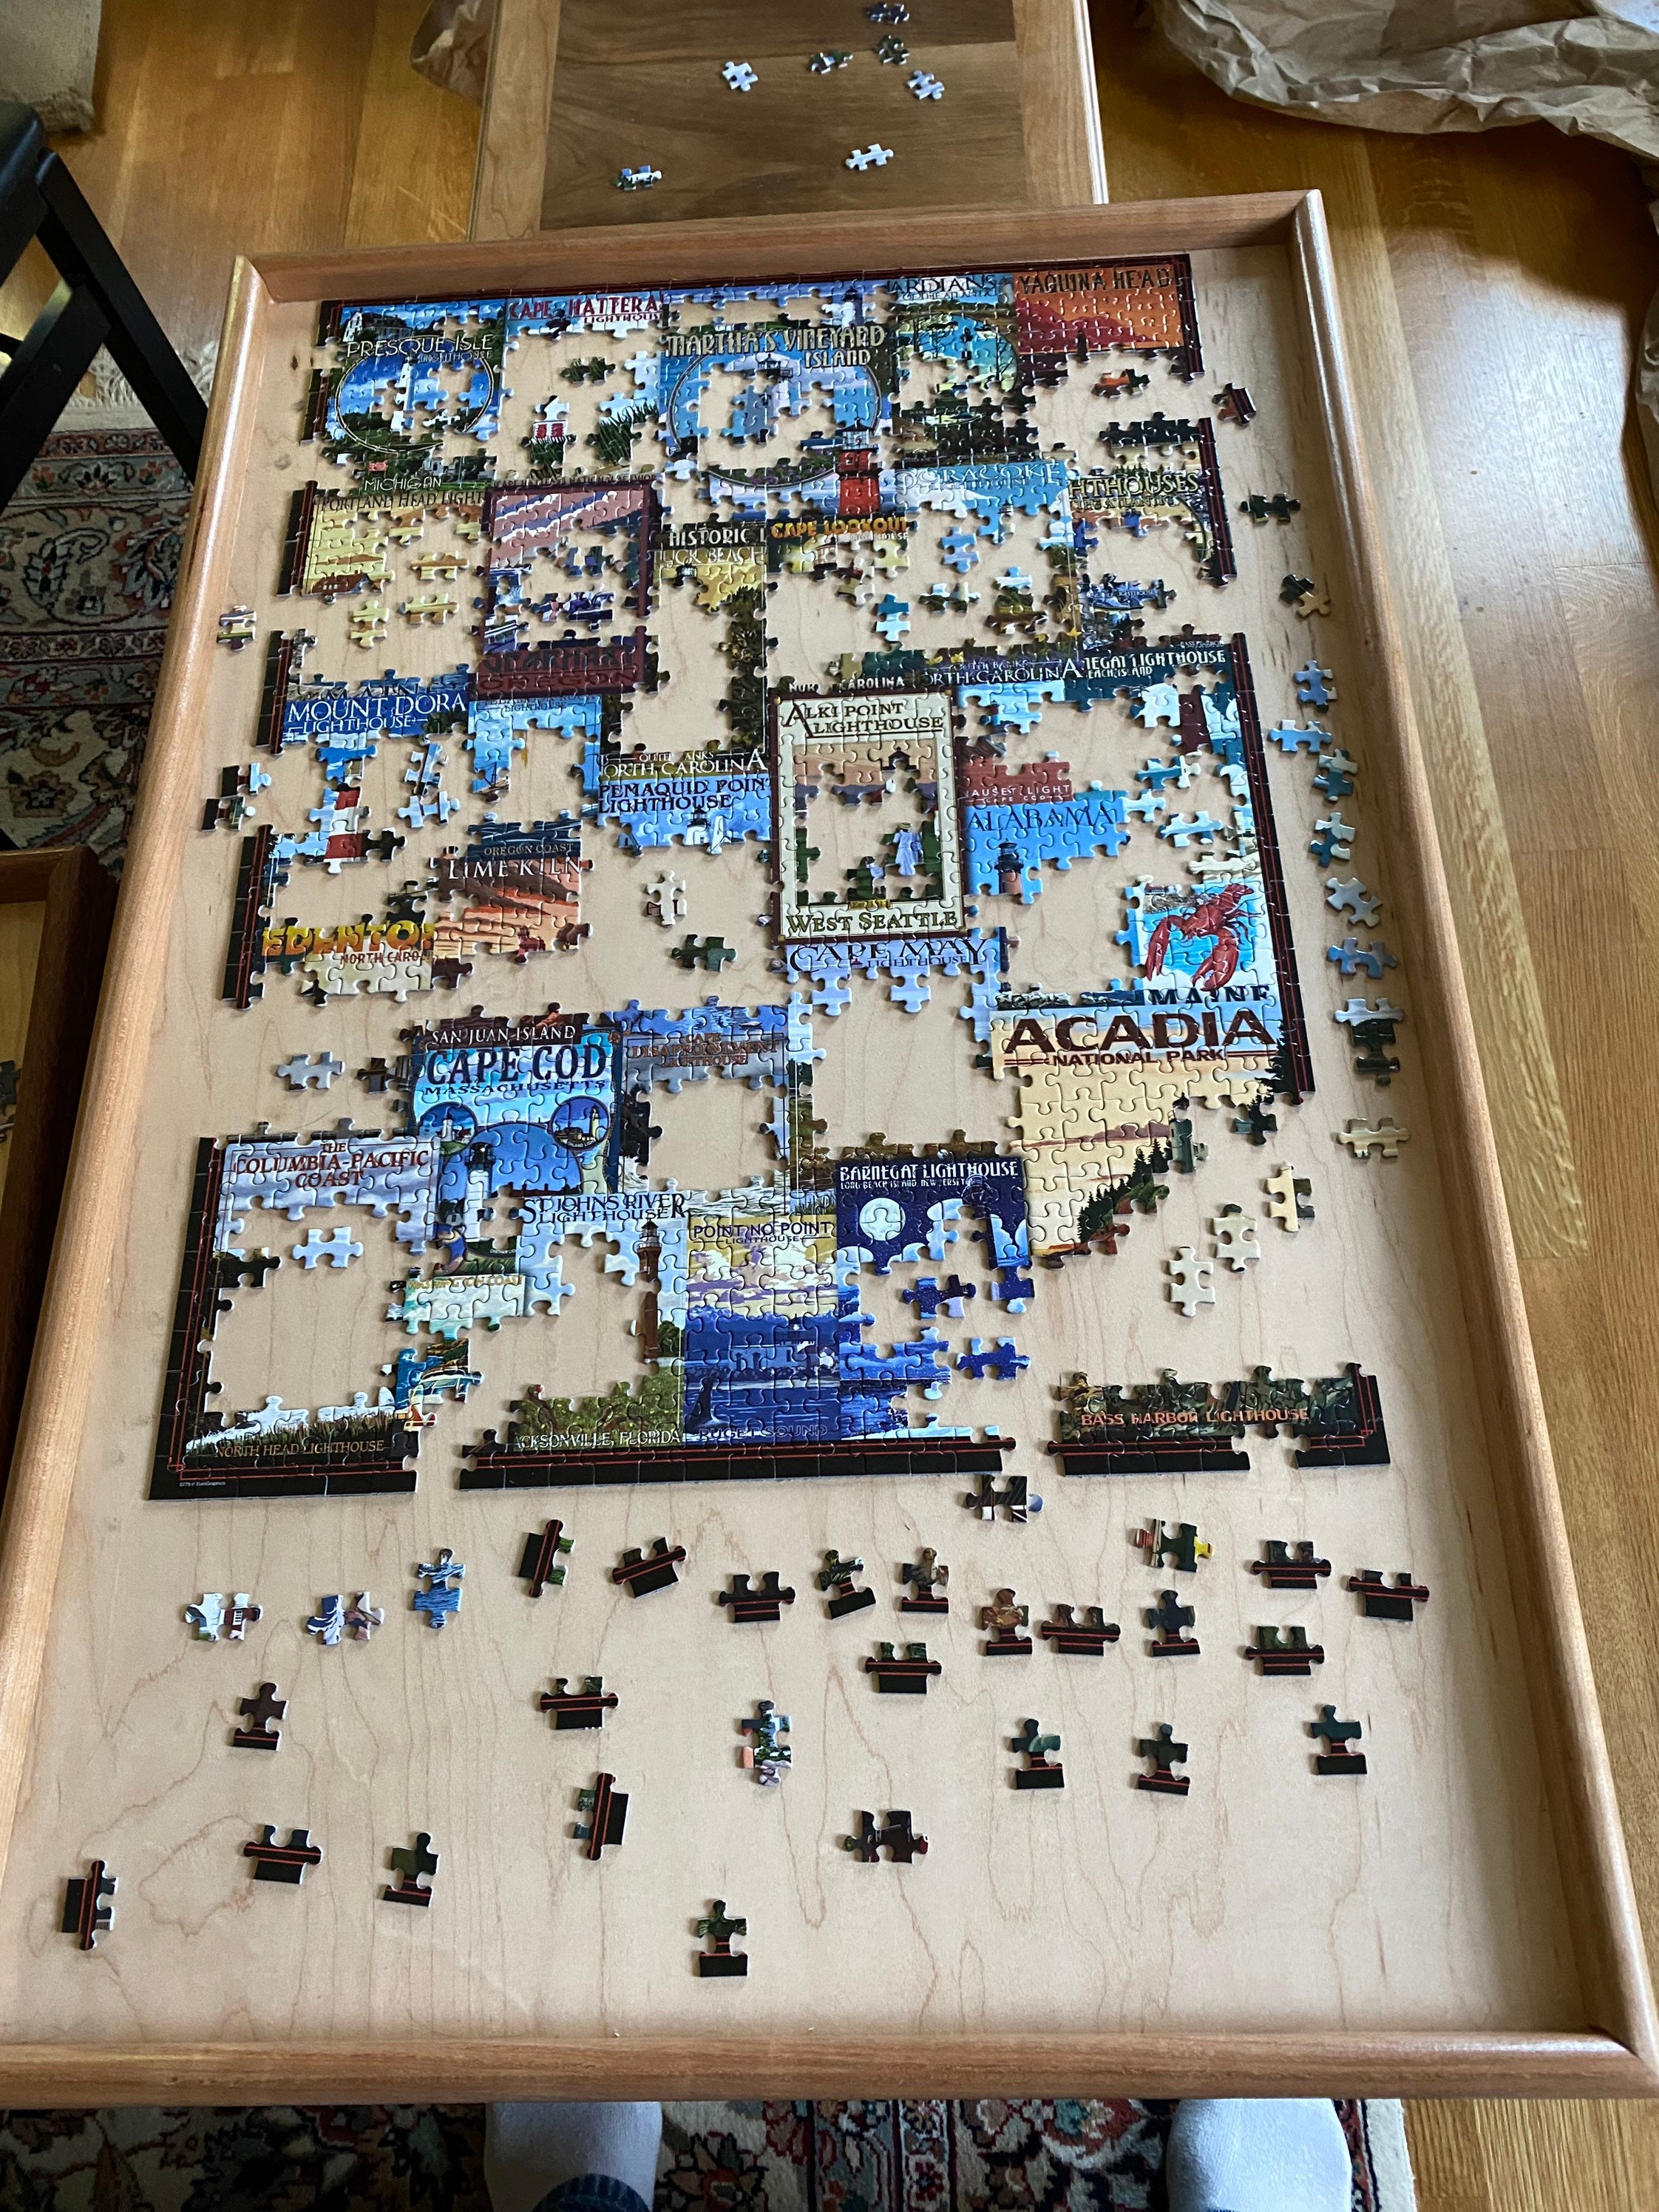  Jigthings – Jigboard 2000 – Jigsaw Puzzle Board for